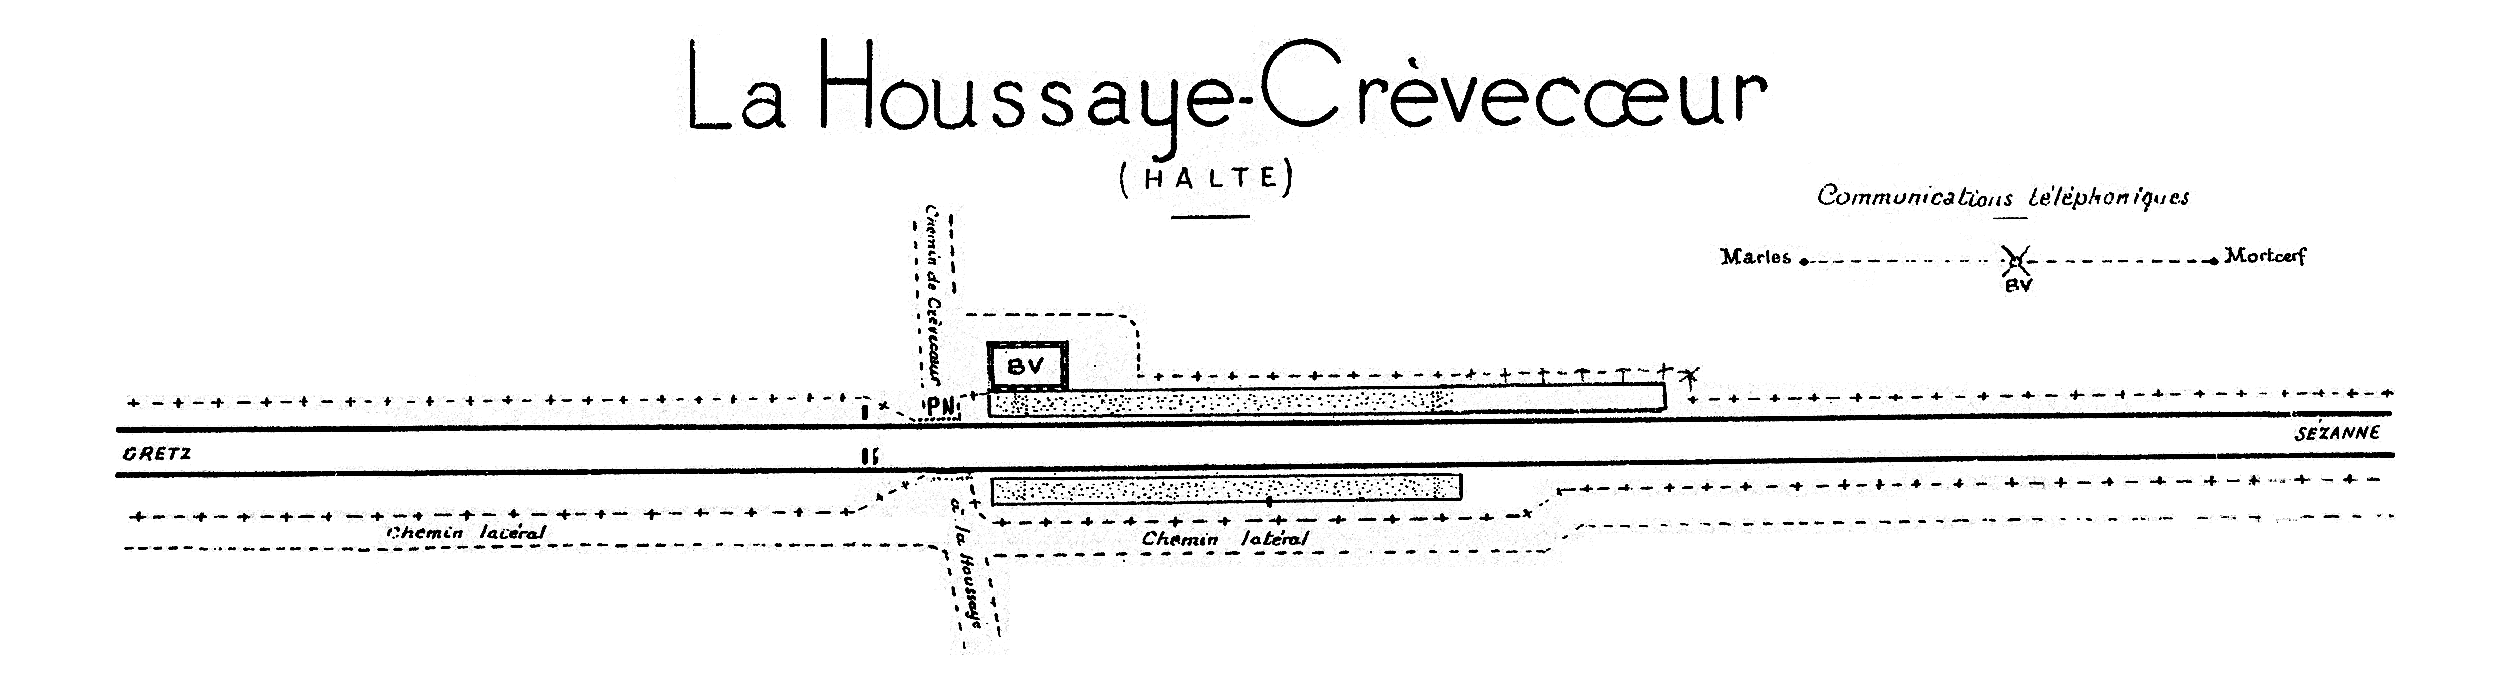 CHEMINS DE FER DE L'EST • CROQUIS DES GARES • LA HOUSSAYE-CRÈVECŒUR (1925)